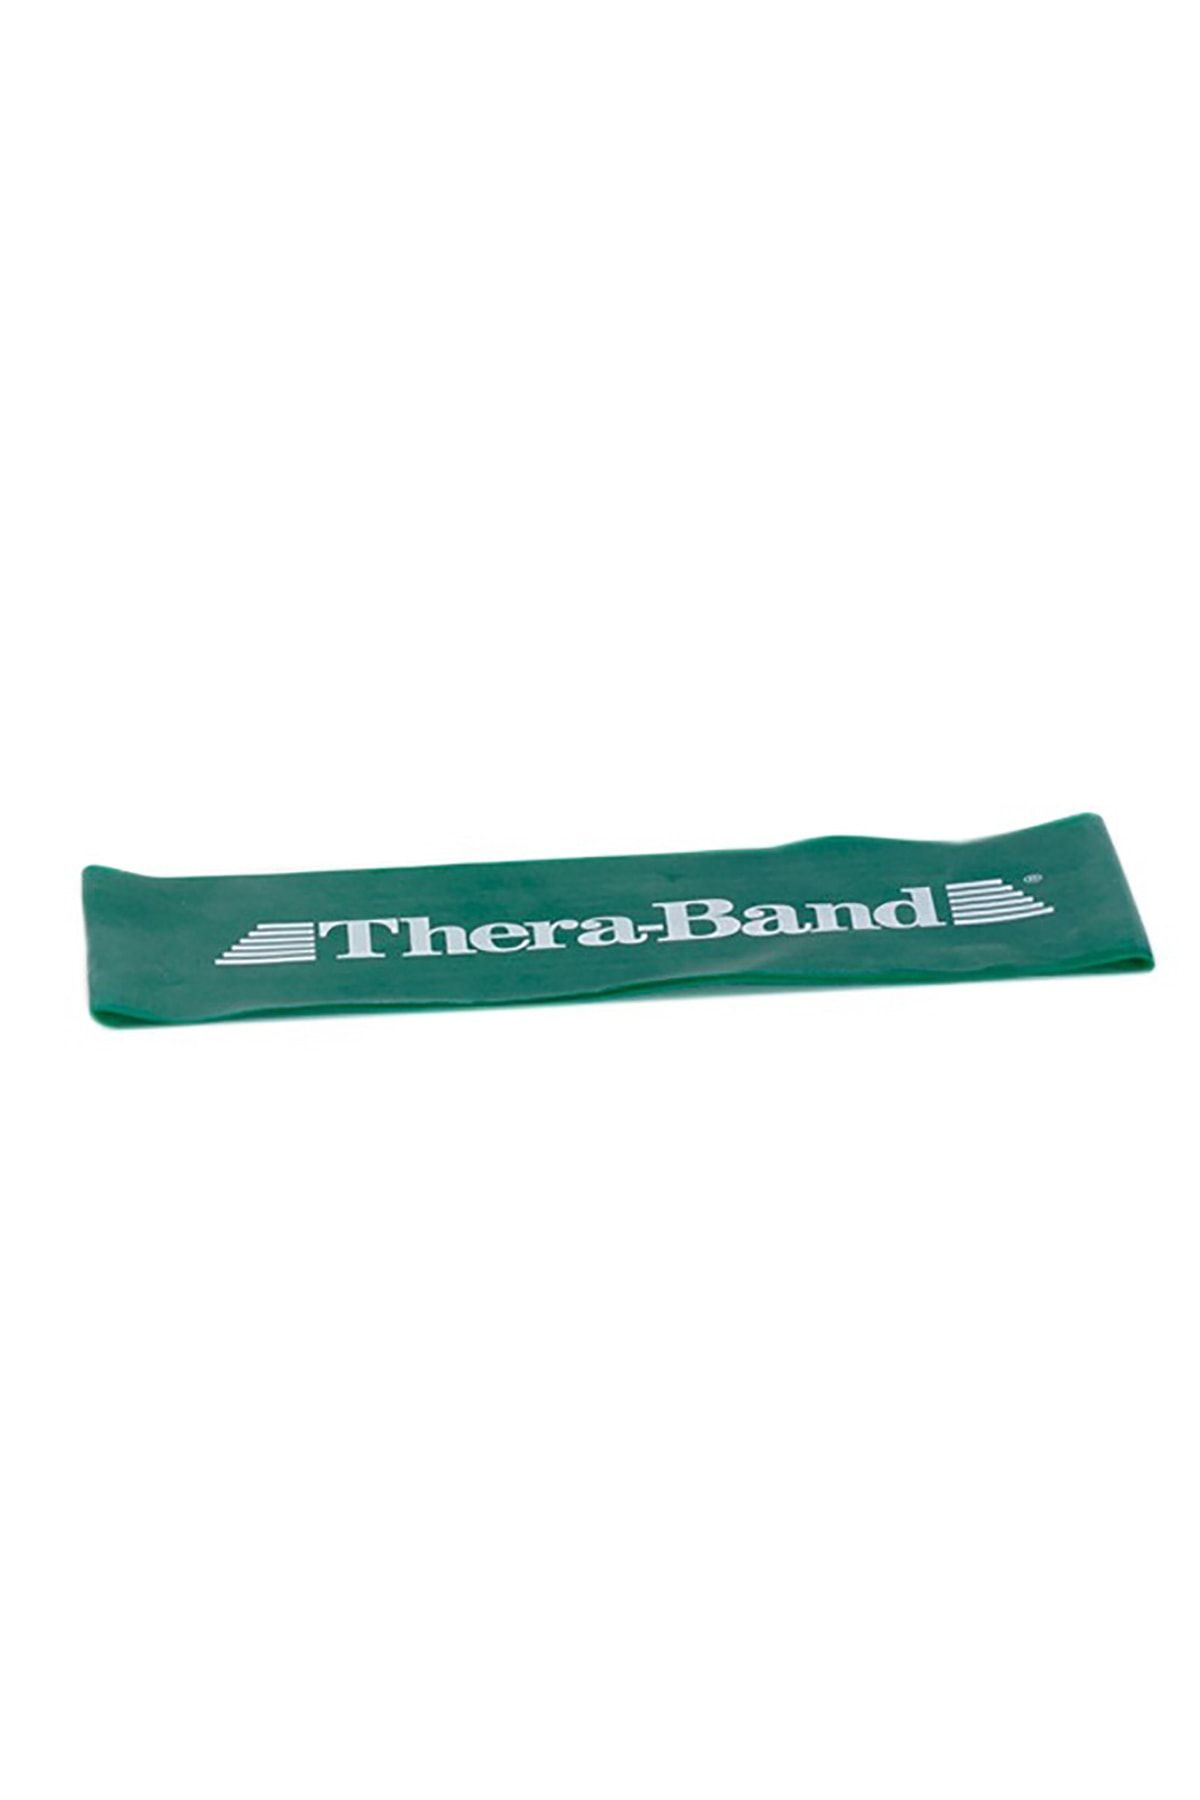 Theraband Thera Band Egzersiz Bandı Loop 7,6 X 20,5 Cm Yeşil